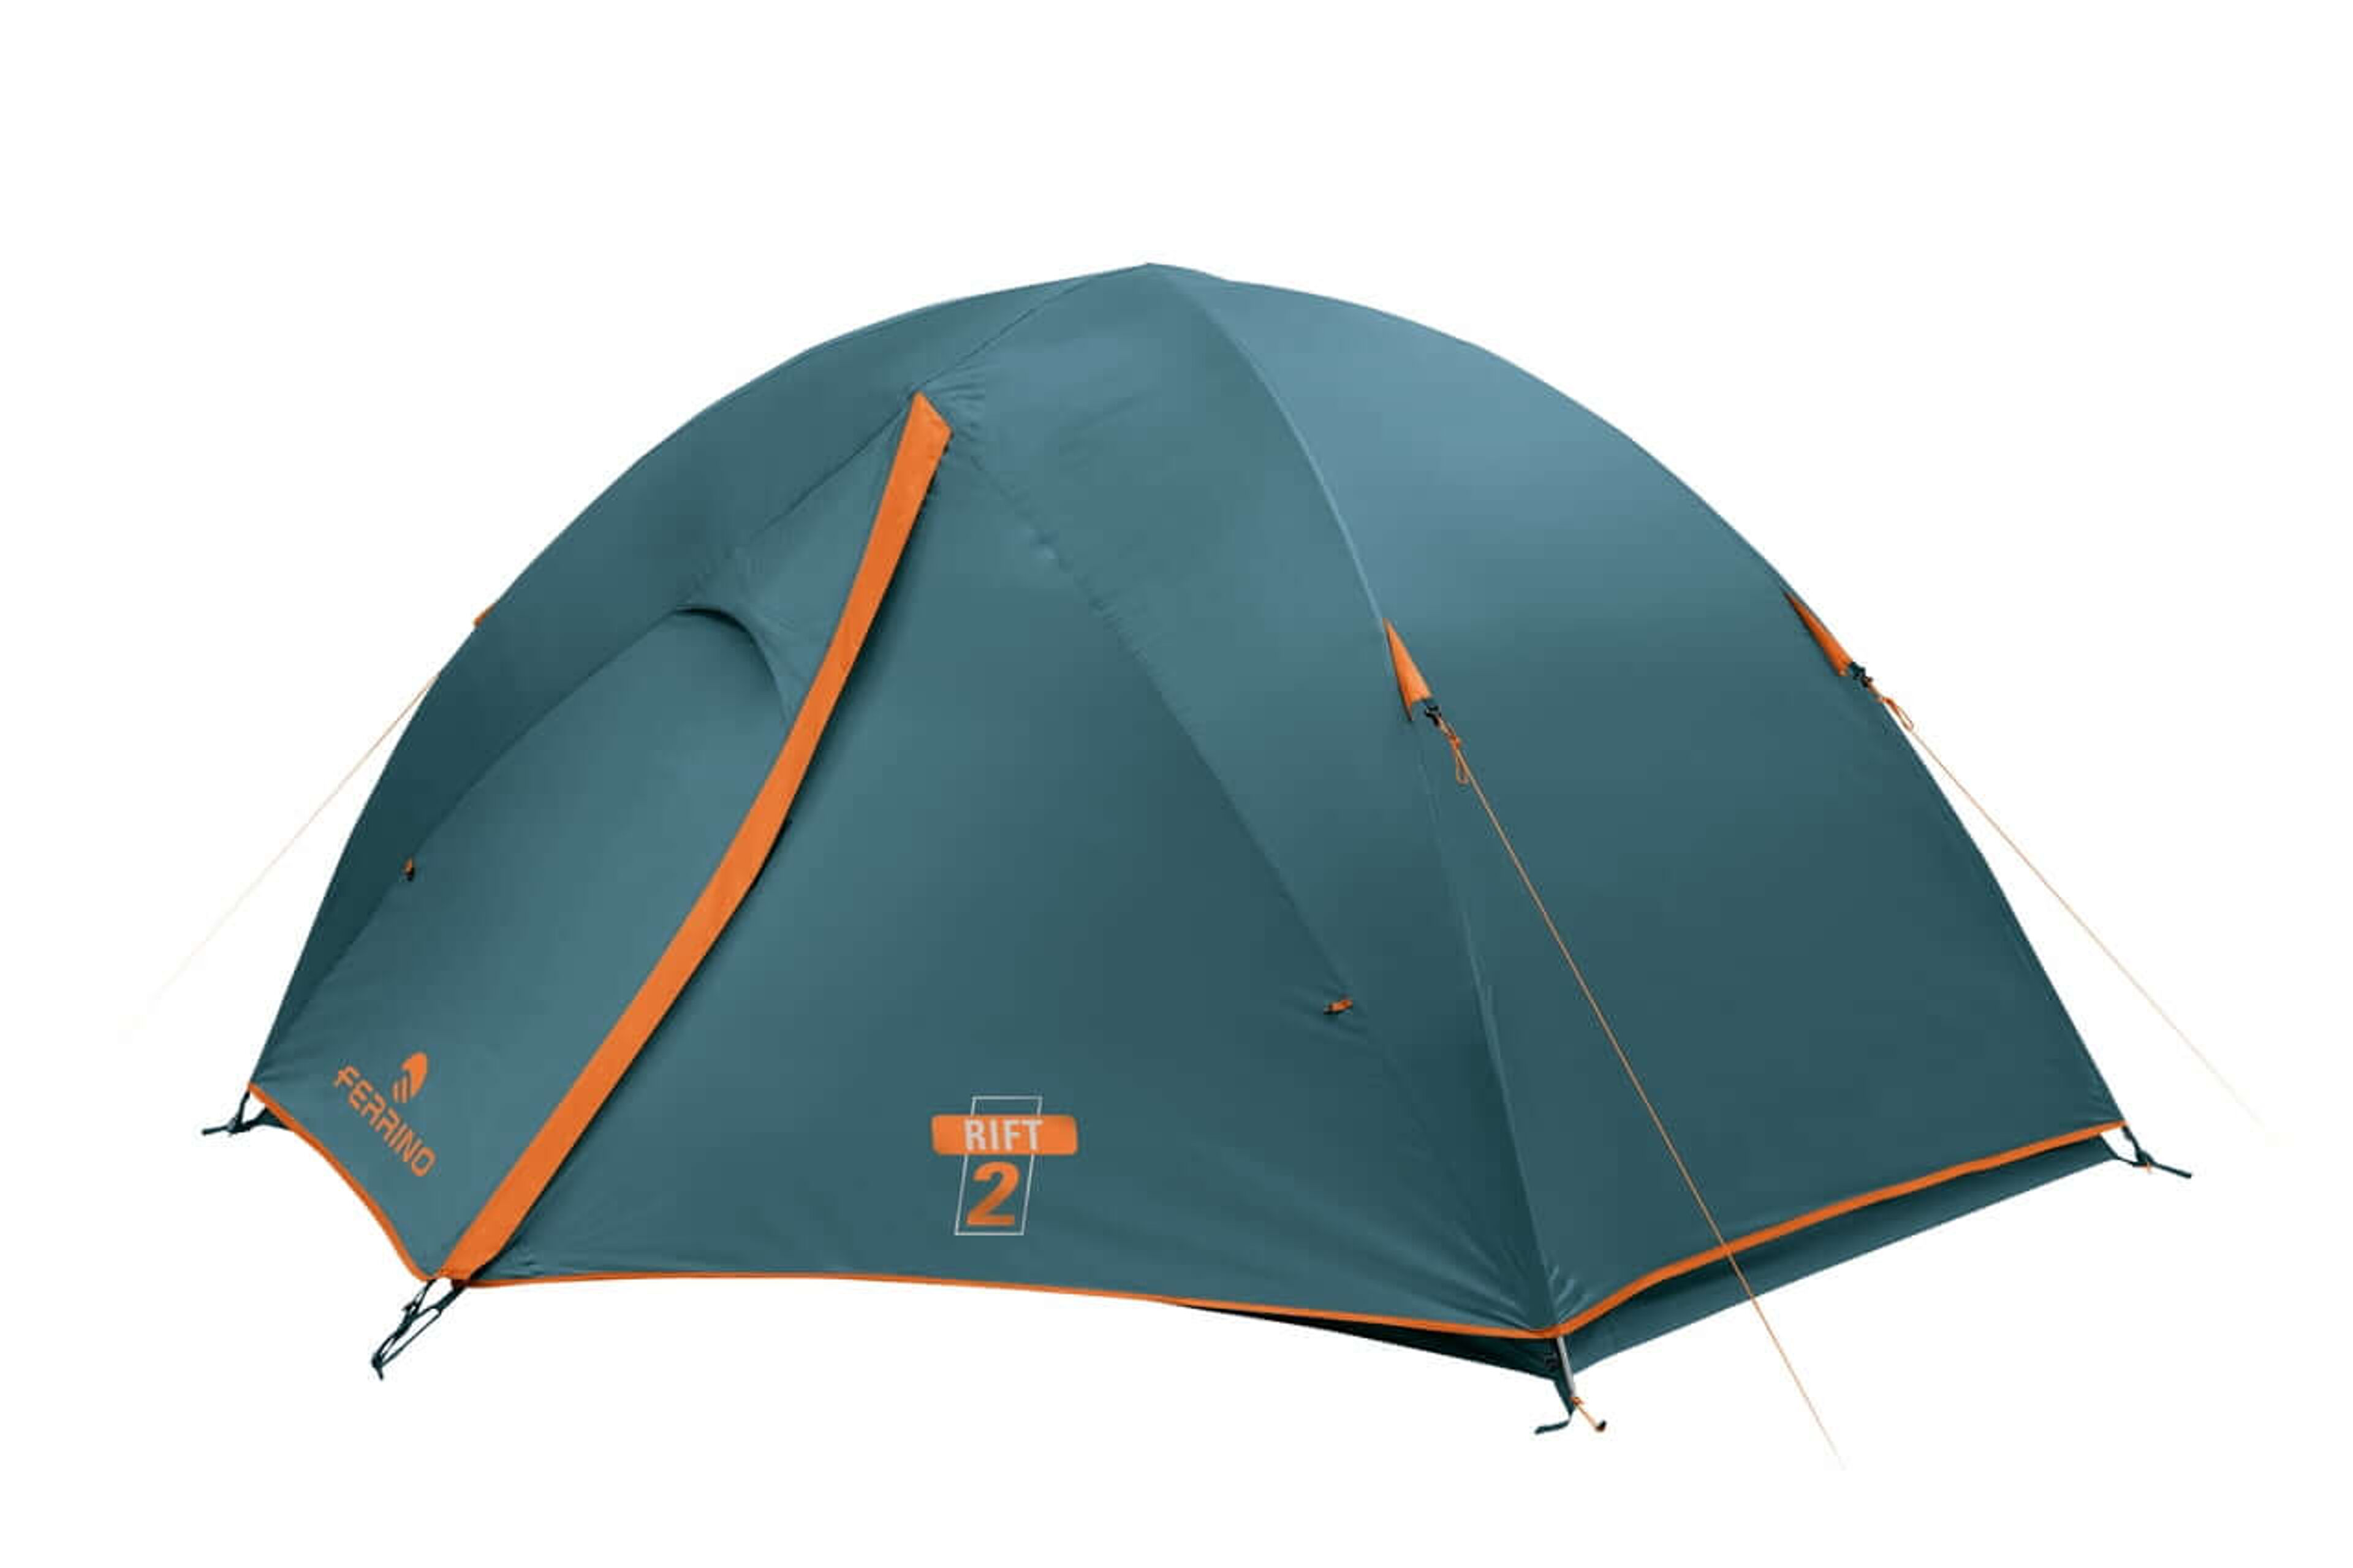 Ferrino Rift 2 Tent